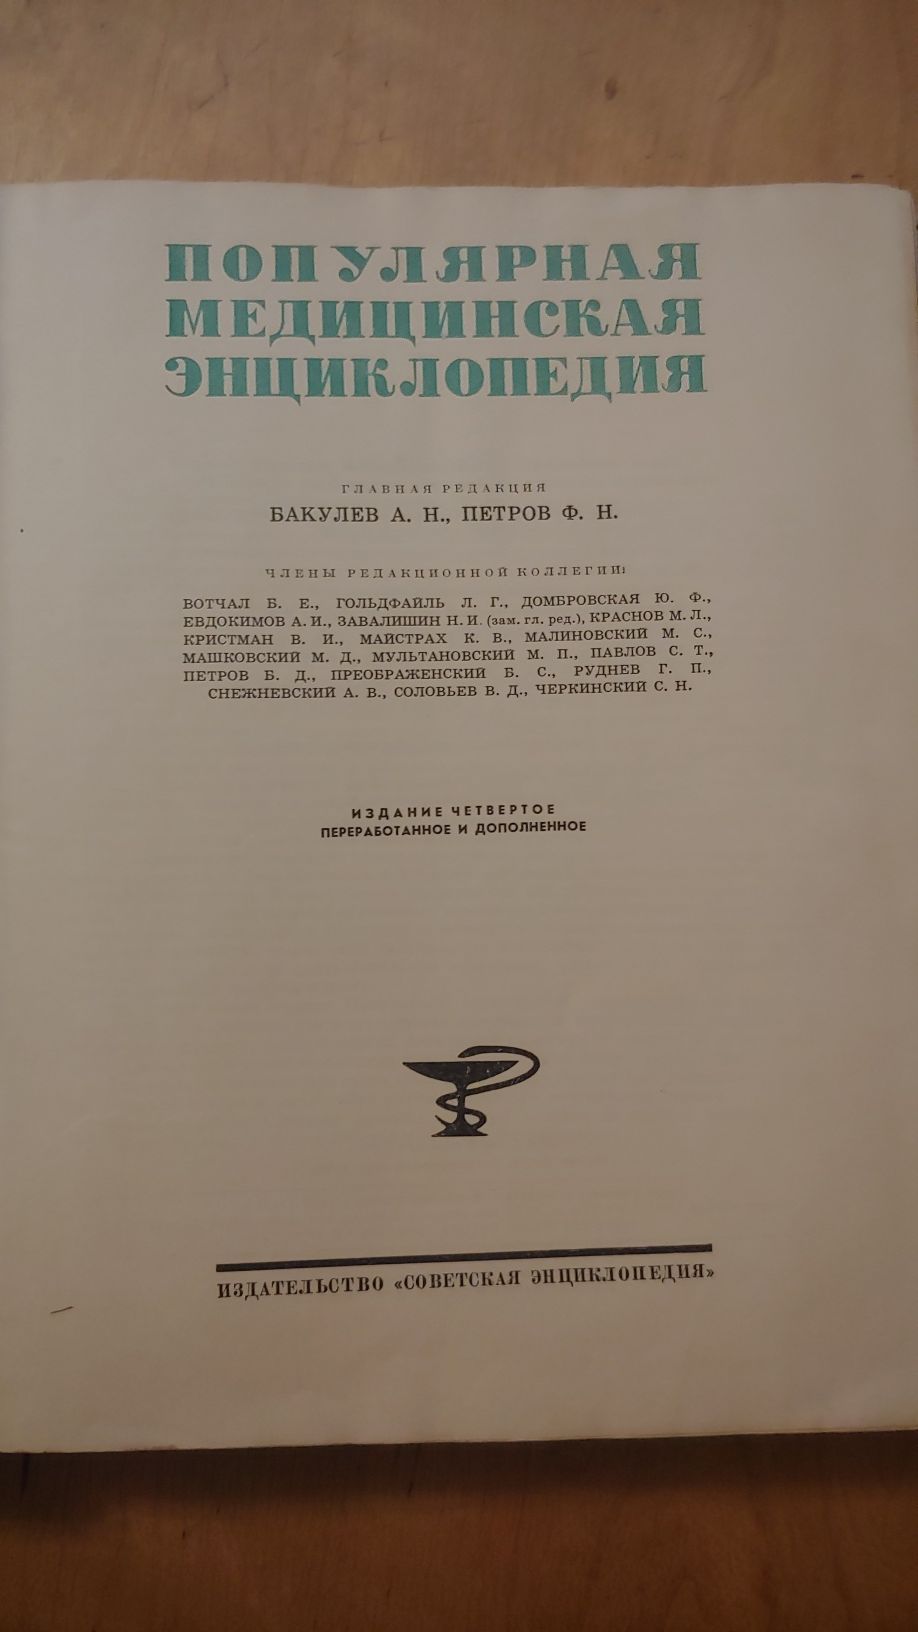 Популярная медицинская энциклопедия, 1965 г. 4-е издание